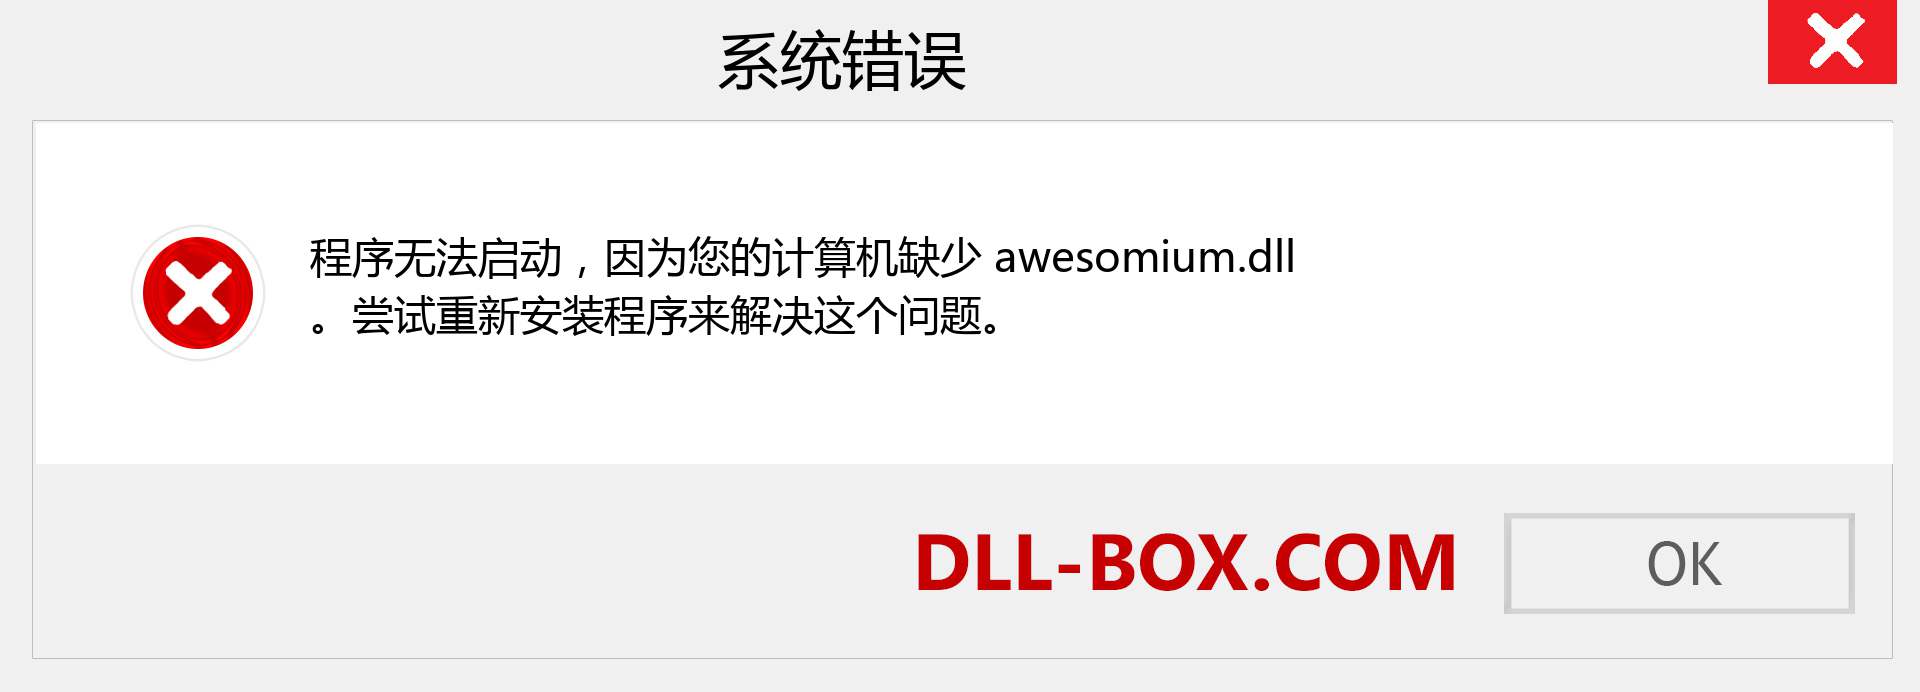 awesomium.dll 文件丢失？。 适用于 Windows 7、8、10 的下载 - 修复 Windows、照片、图像上的 awesomium dll 丢失错误